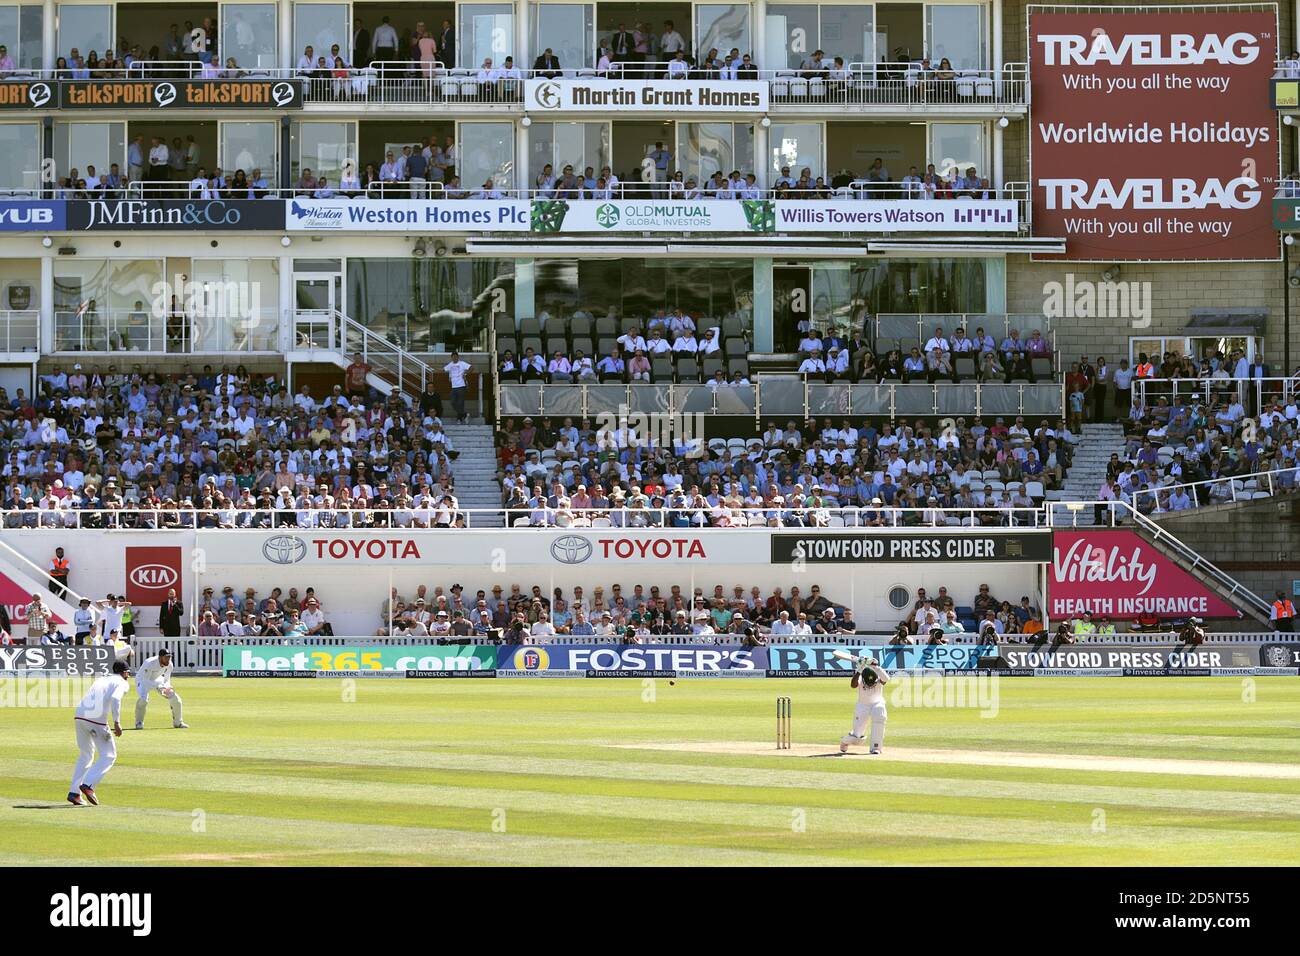 Eine allgemeine Ansicht des Kia Ovals während des Tests Spiel zwischen England und Pakistan Stockfoto